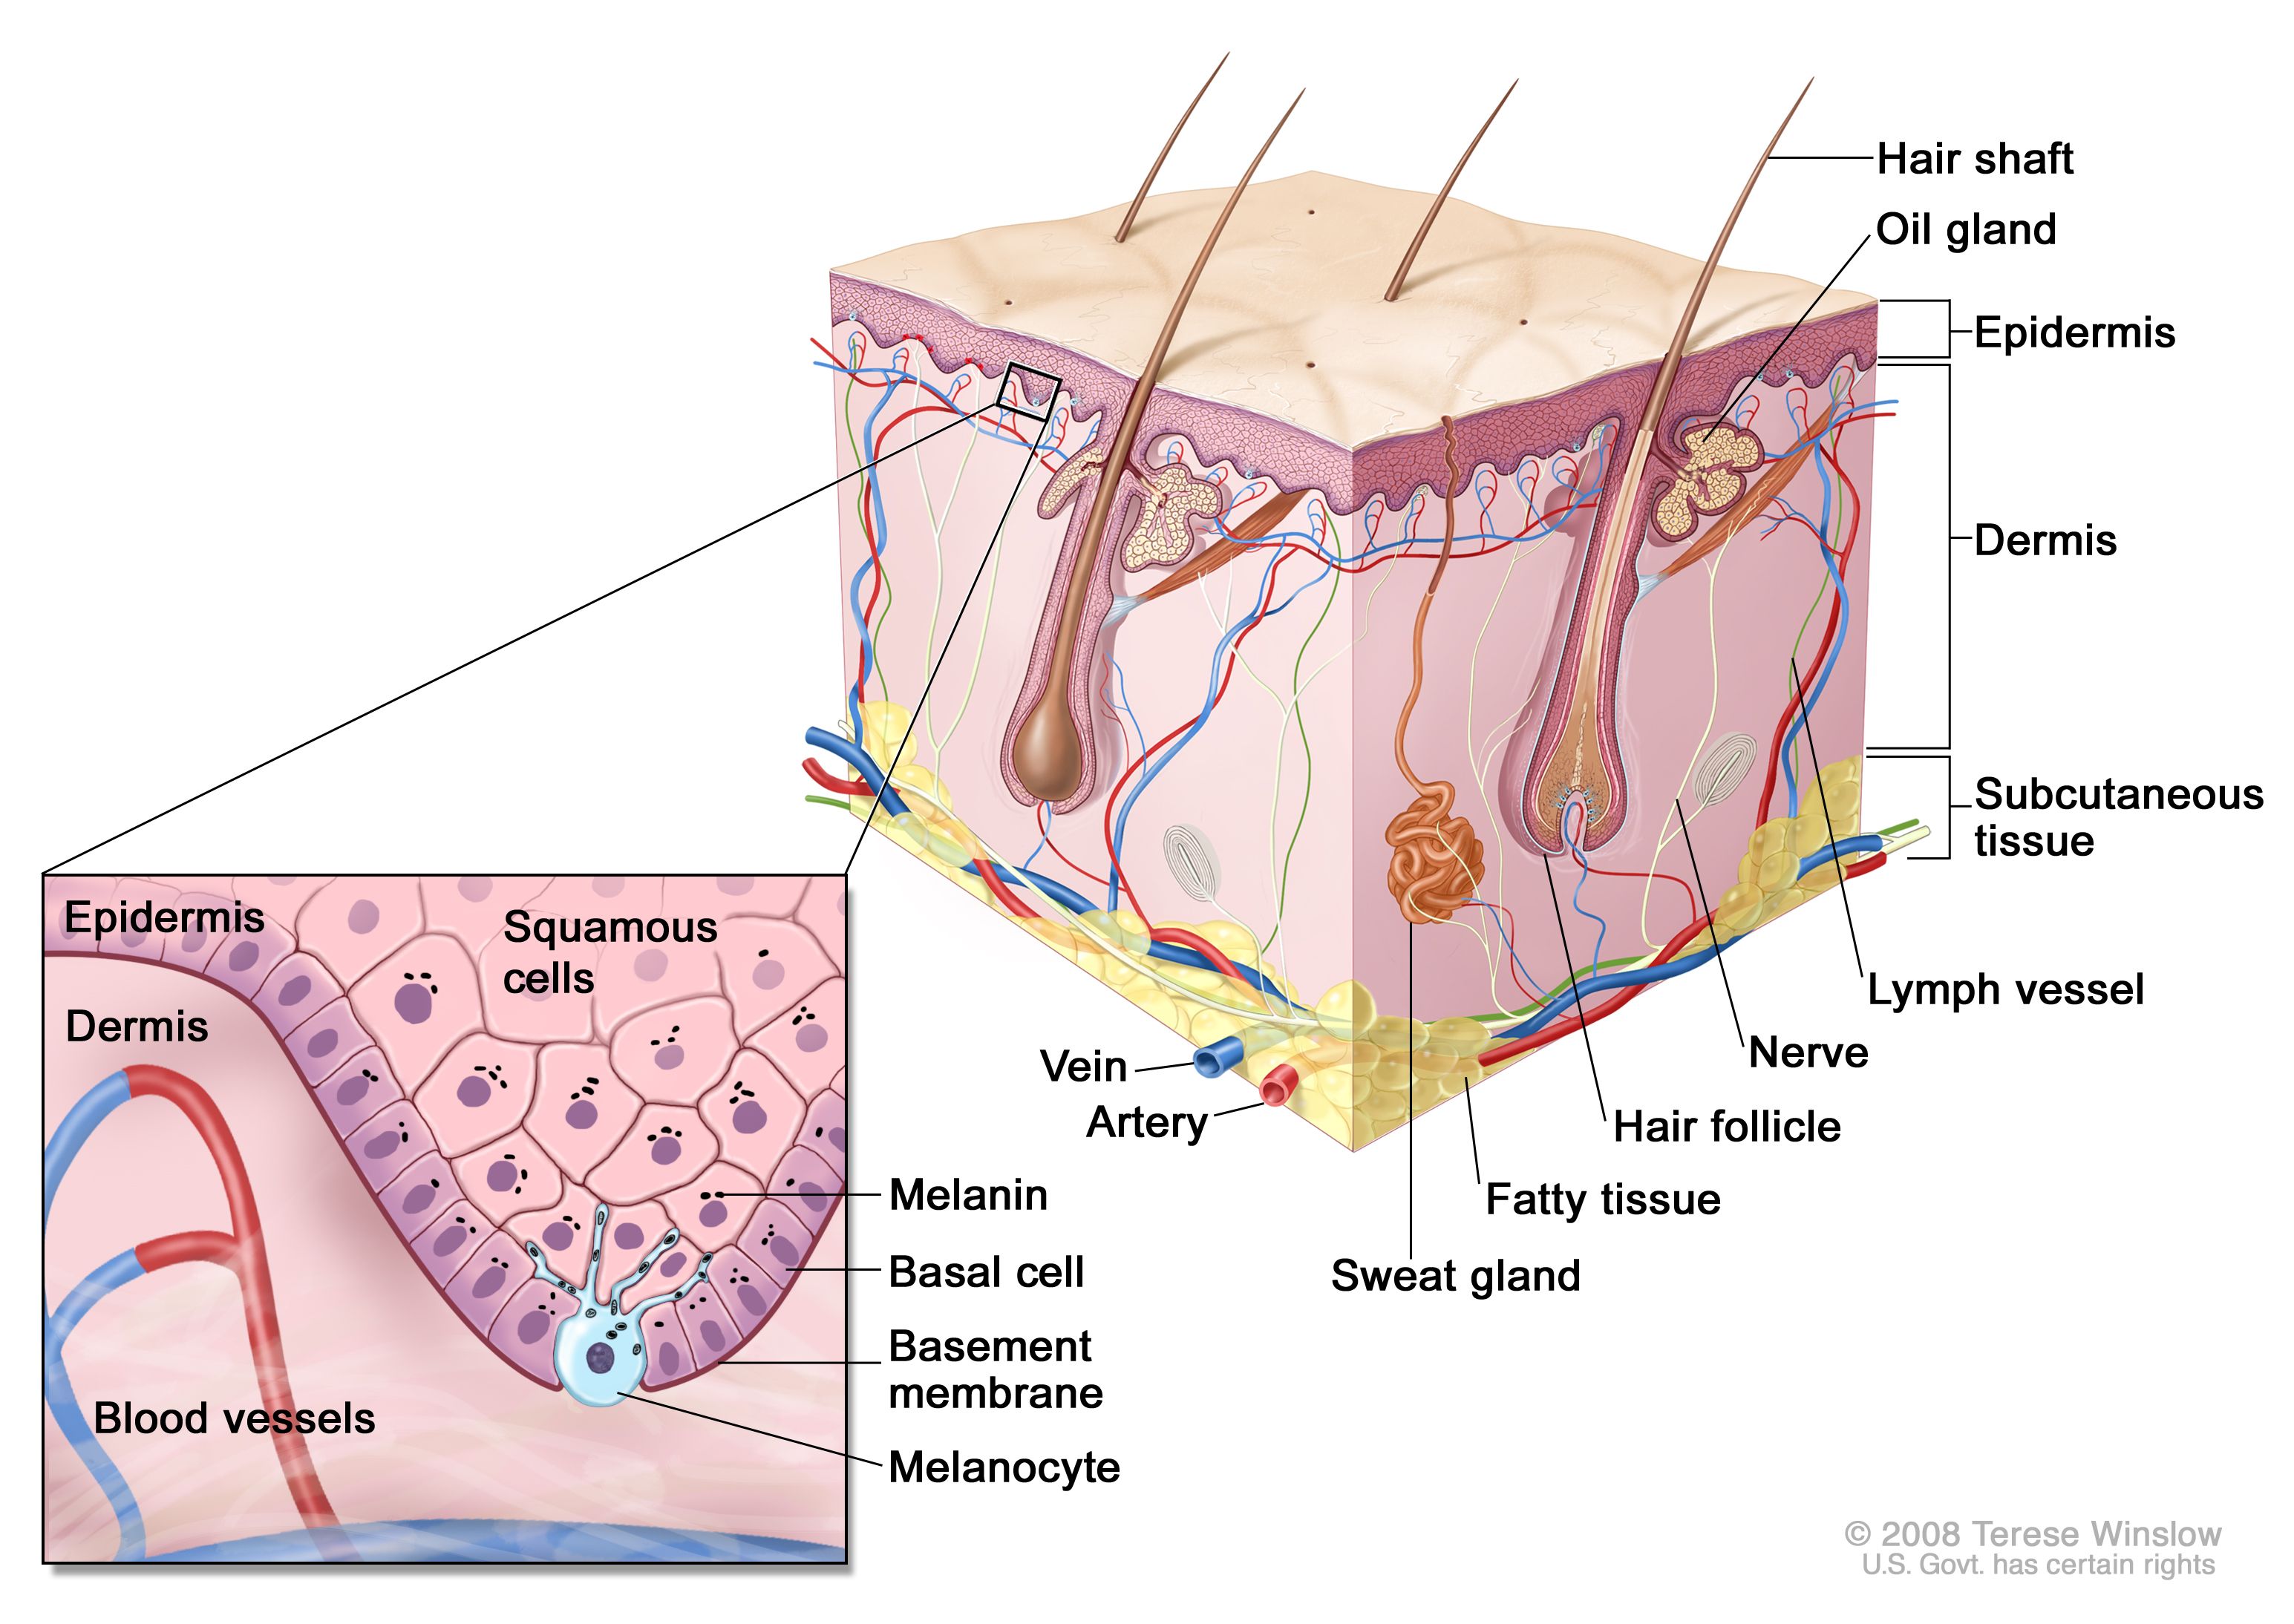 正常皮膚の略図；表皮、真皮、毛包、汗腺、毛幹、静脈、動脈、脂肪組織、神経、リンパ管、脂腺、皮下組織などの正常皮膚の解剖学的構造を示す。拡大図では、表皮の扁平上皮細胞および基底細胞層、表皮と真皮の間の基底膜、および血管を有する真皮を詳細に示している。メラニンは細胞内にある。メラノサイトは、表皮の最深部に位置する基底細胞層にある。